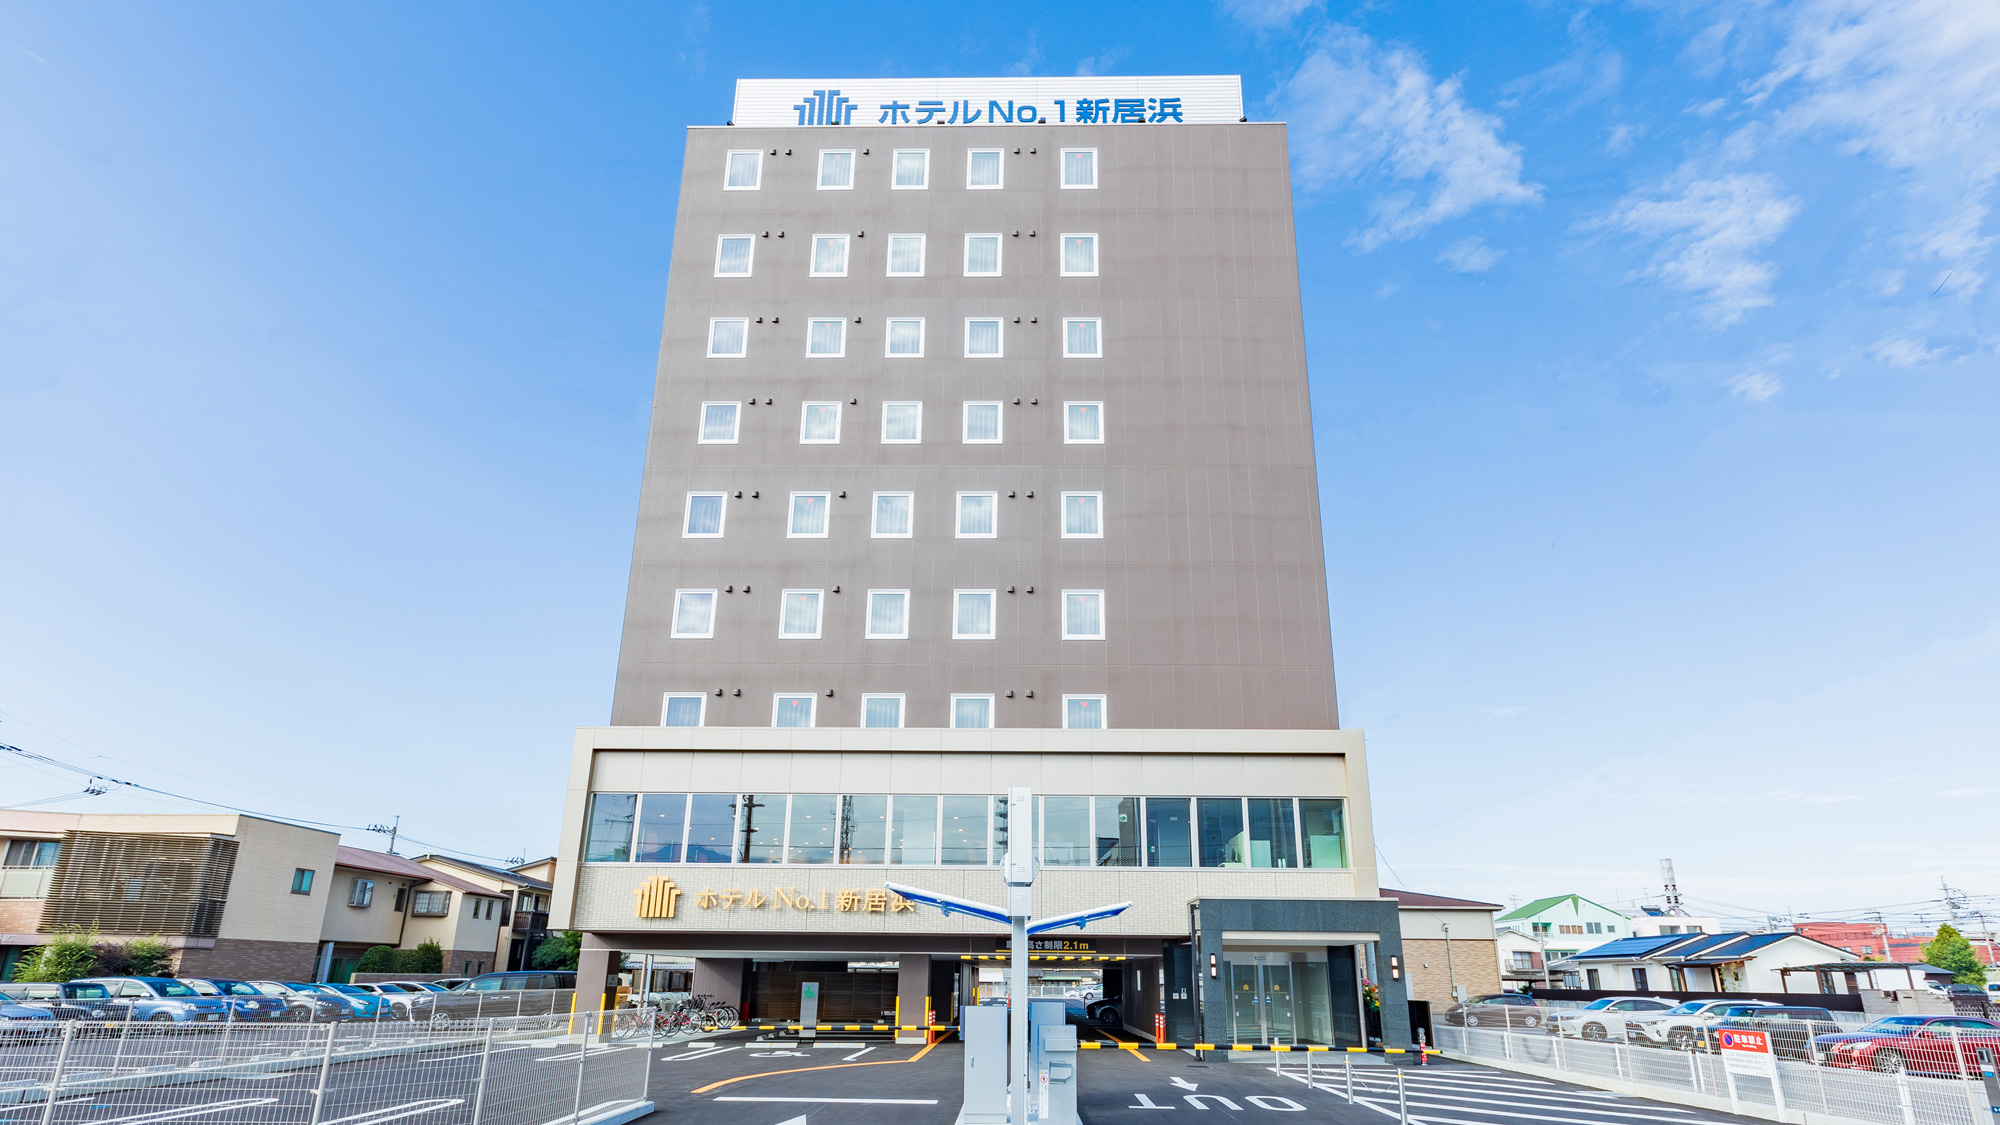 新居滨No.1酒店 